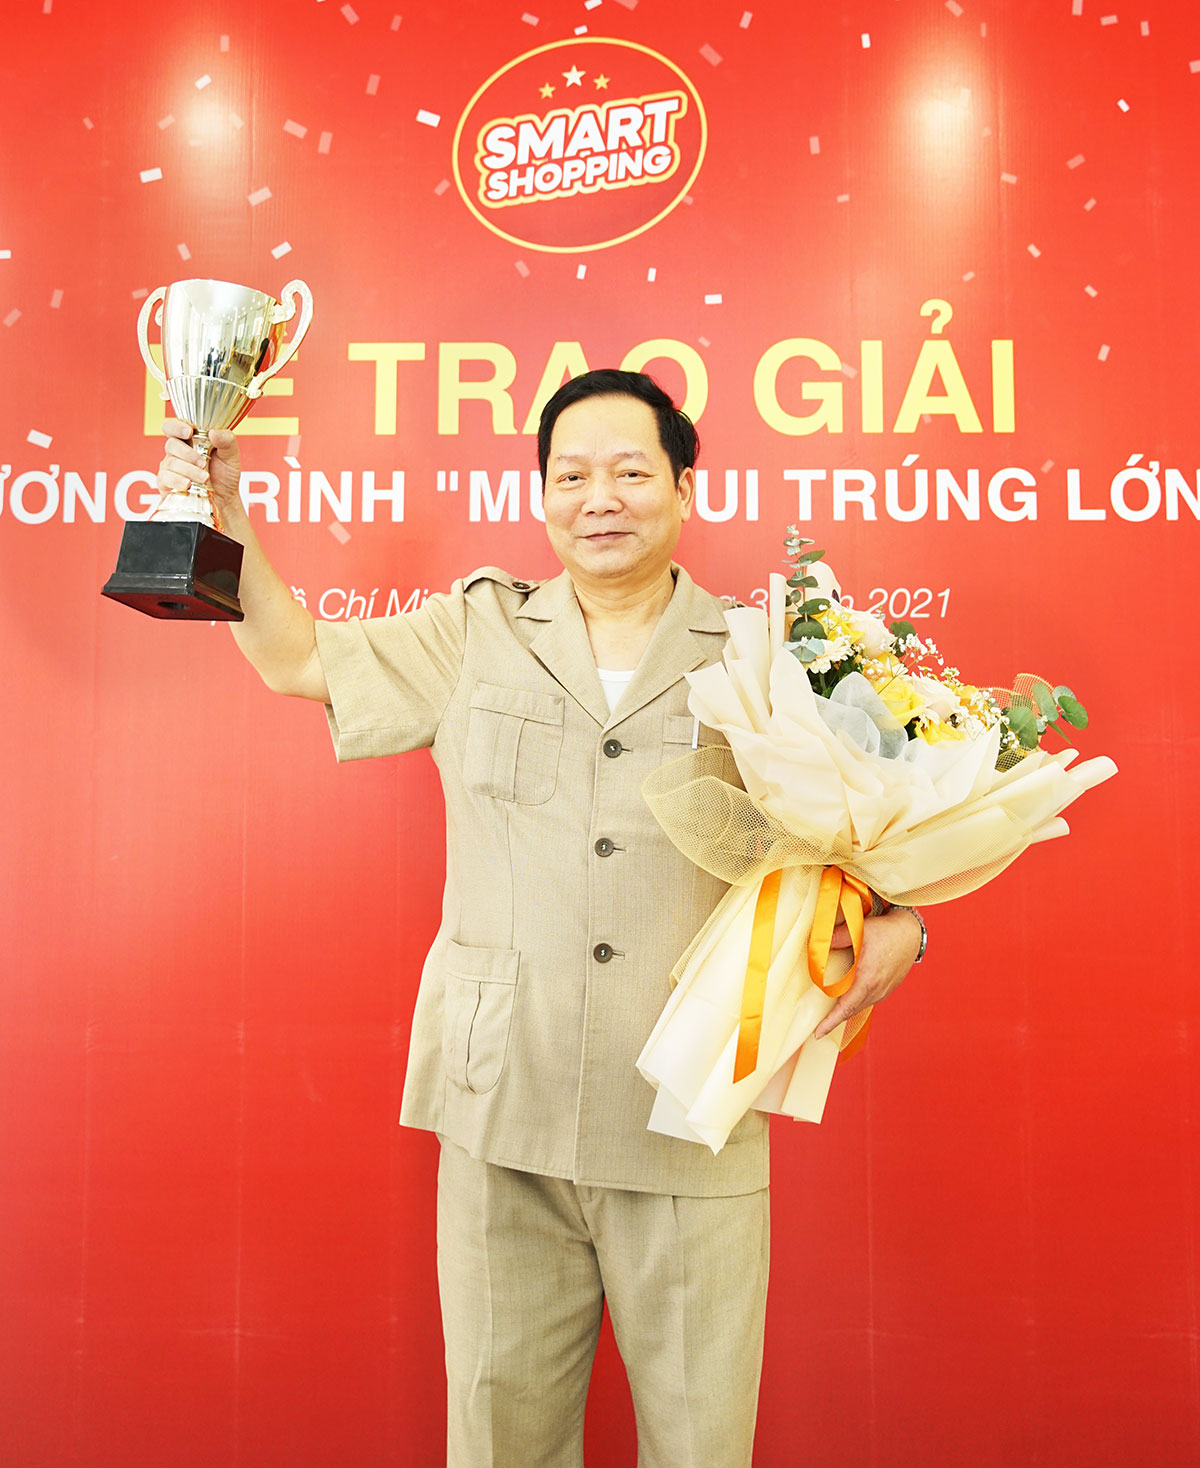 Ông Võ Trọng Thái - Người thắng giải Vàng trị giá 350.000.000 đồng của Smart Shopping